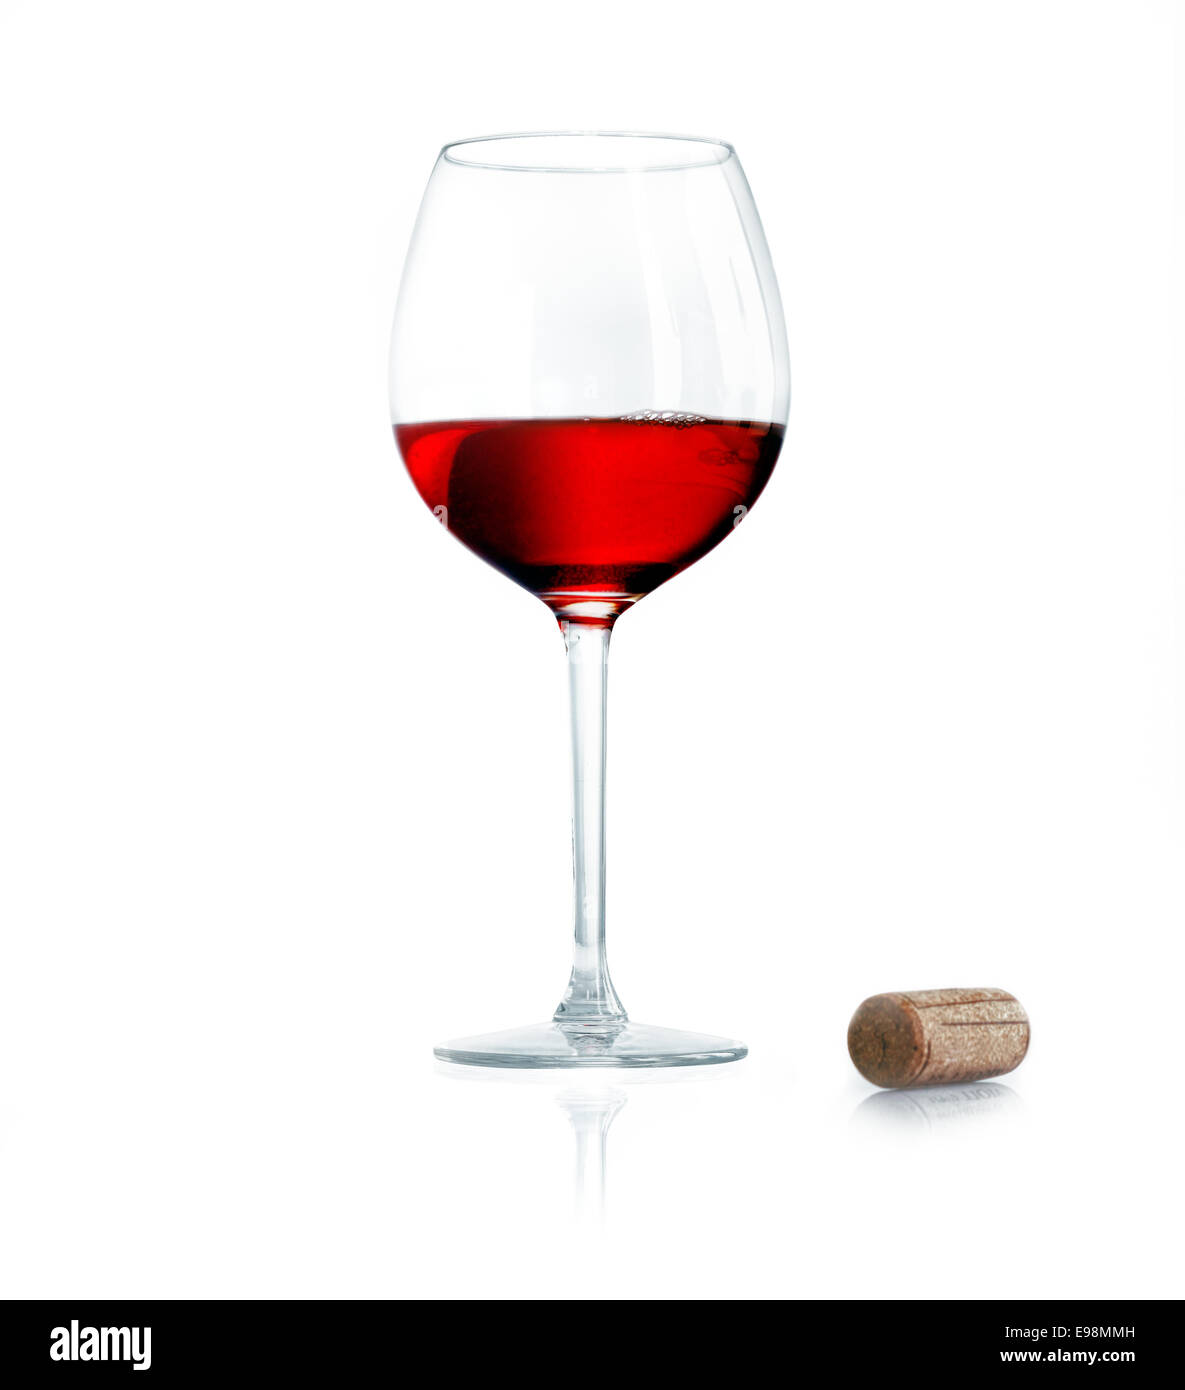 Vino rosso isolato con un tappo di sughero isolati su sfondo bianco. Forse per asciugare la Borgogna,Sauvignon o Merlot concetti Foto Stock